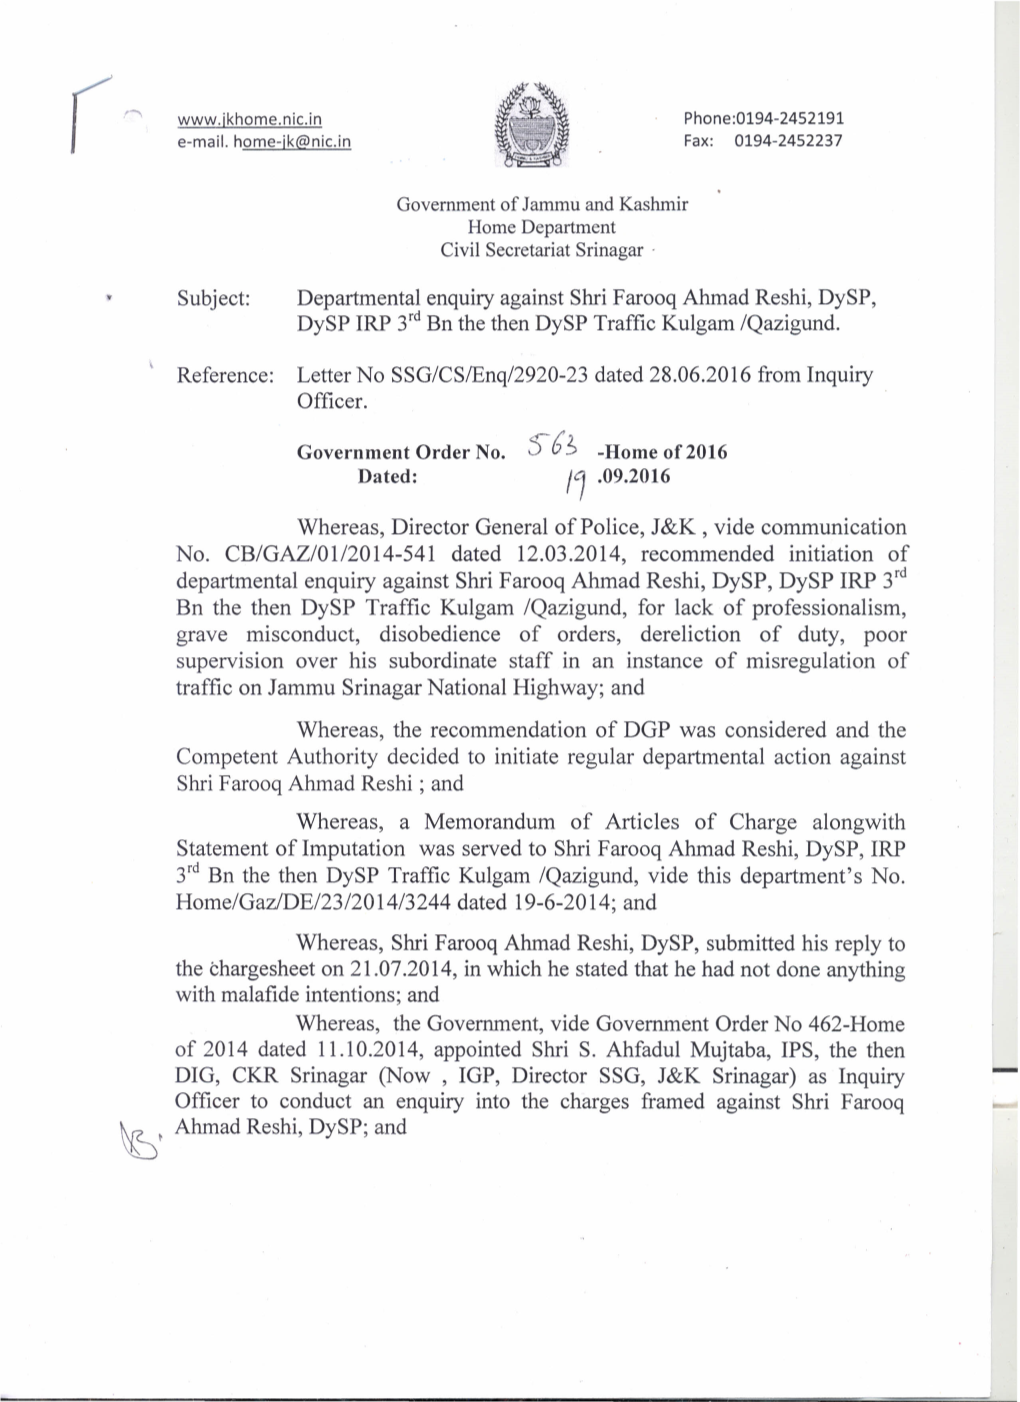 Departmental Enquiry Against Shri Farooq Ahmad Reshi, Dysp, Dysp IRP 3Rd Bn the Then Dysp Traffic Kulgam /Qazigund